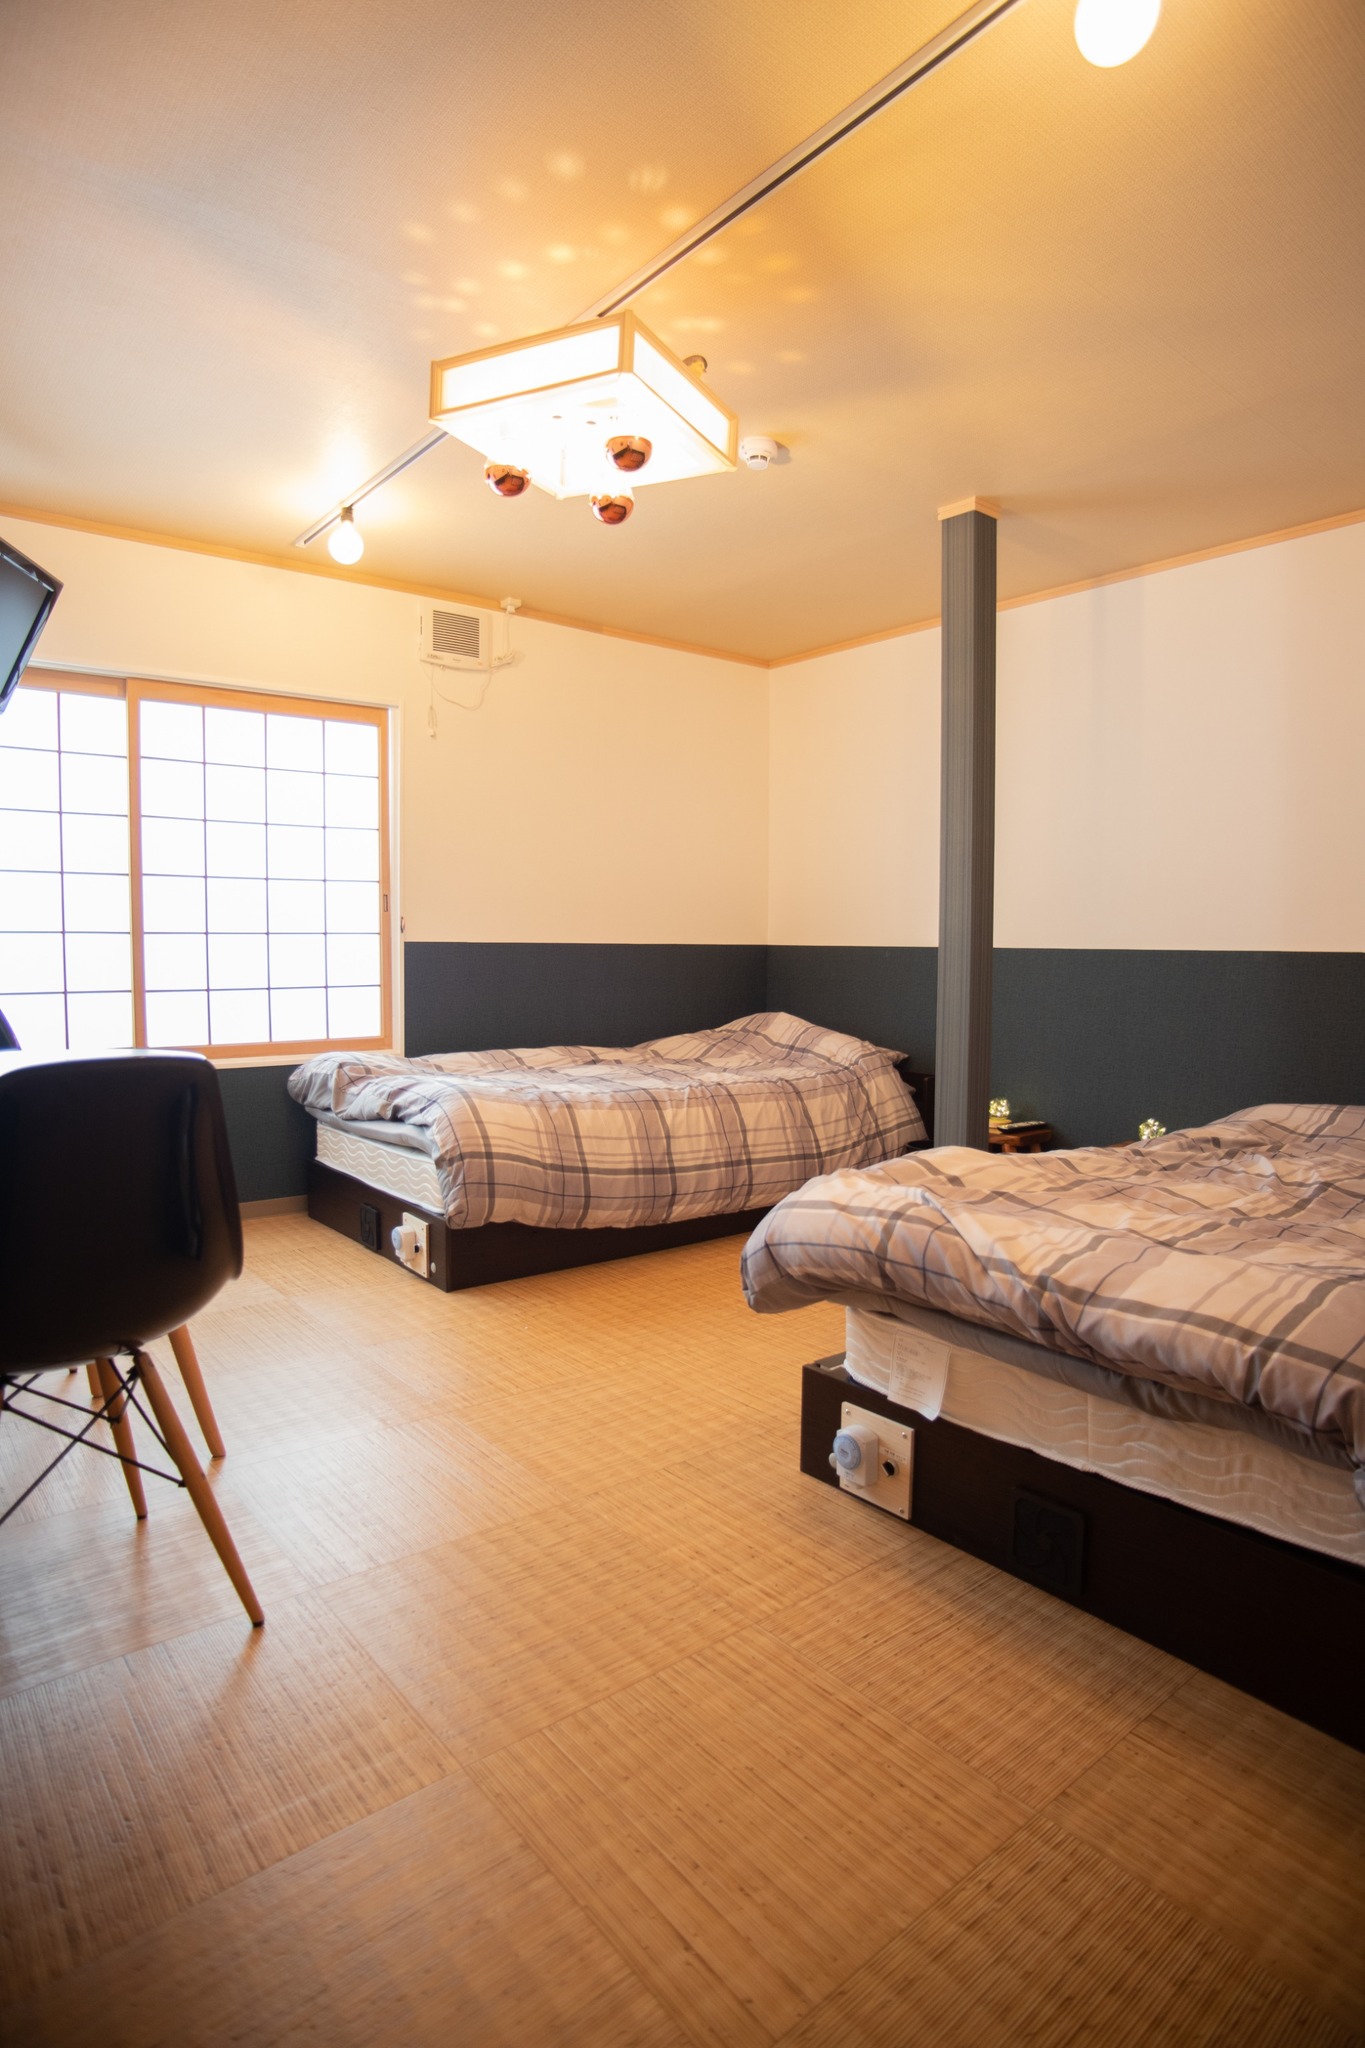 Room2は落ち着いた和モダンのお部屋です。  Room 2:Modern Japanese style room with two single beds.